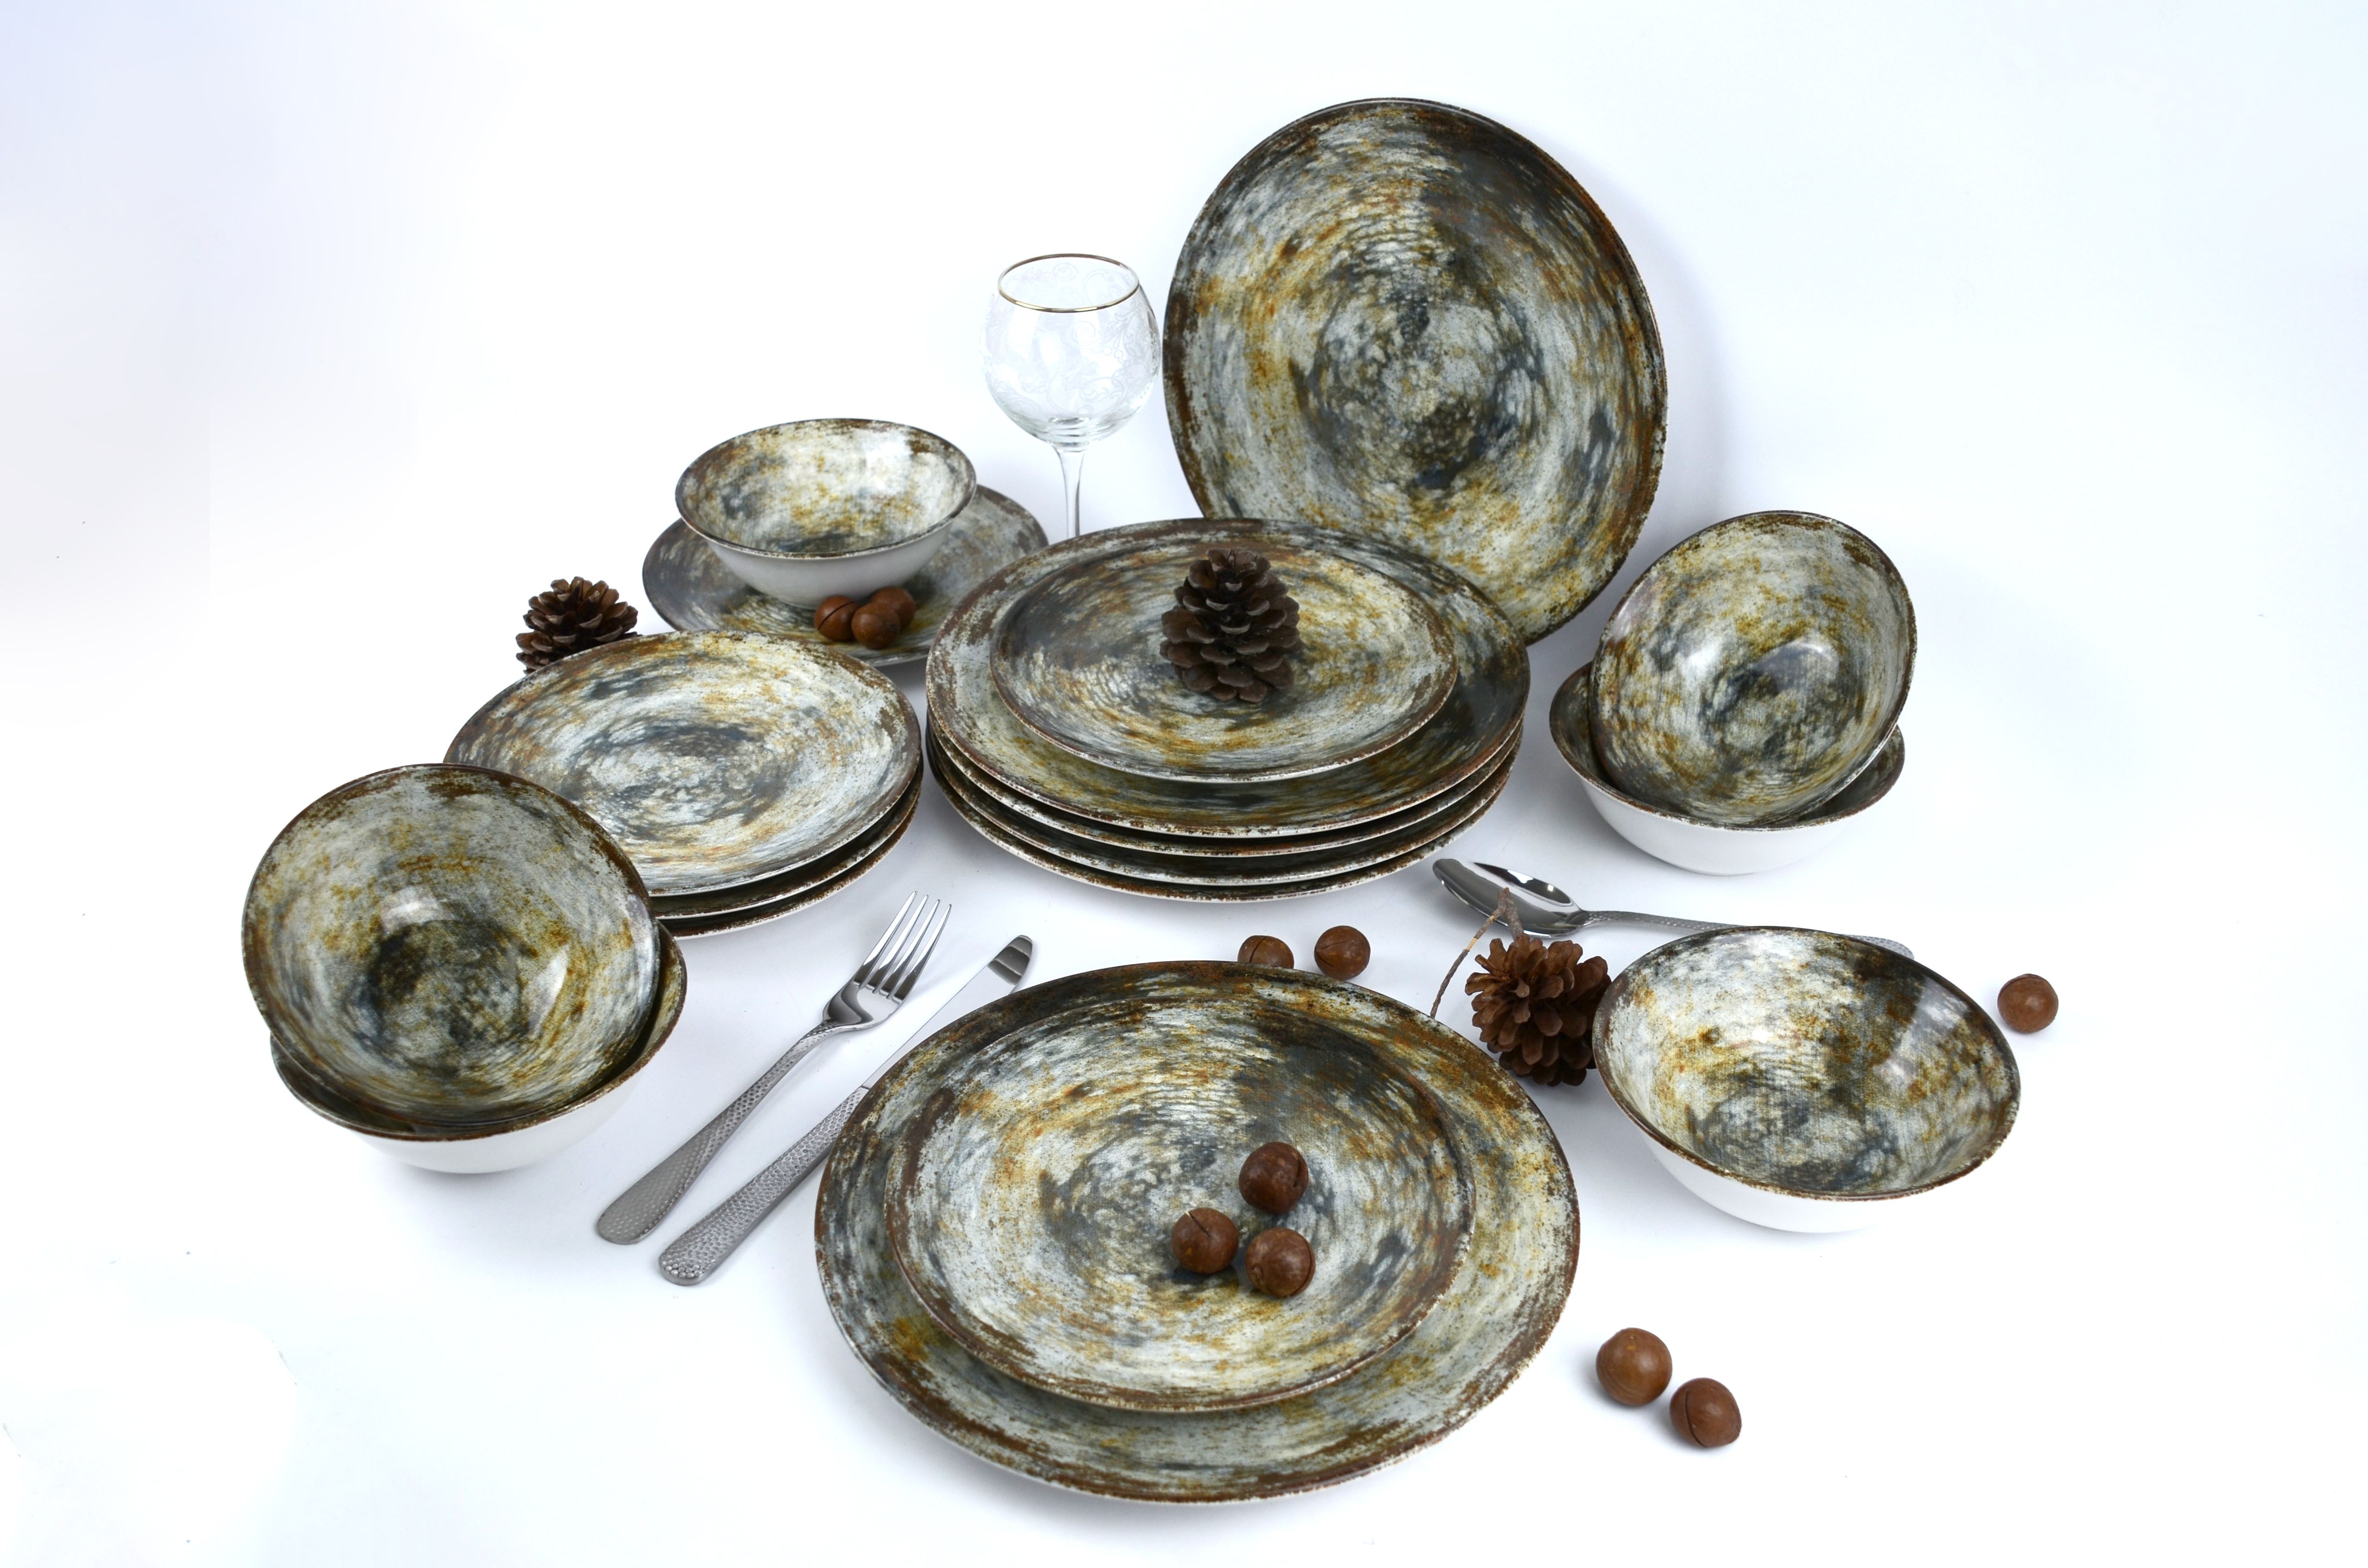 Сервиз обеденный столовый набор керамической посуды с принтом.edessa SR-781-18